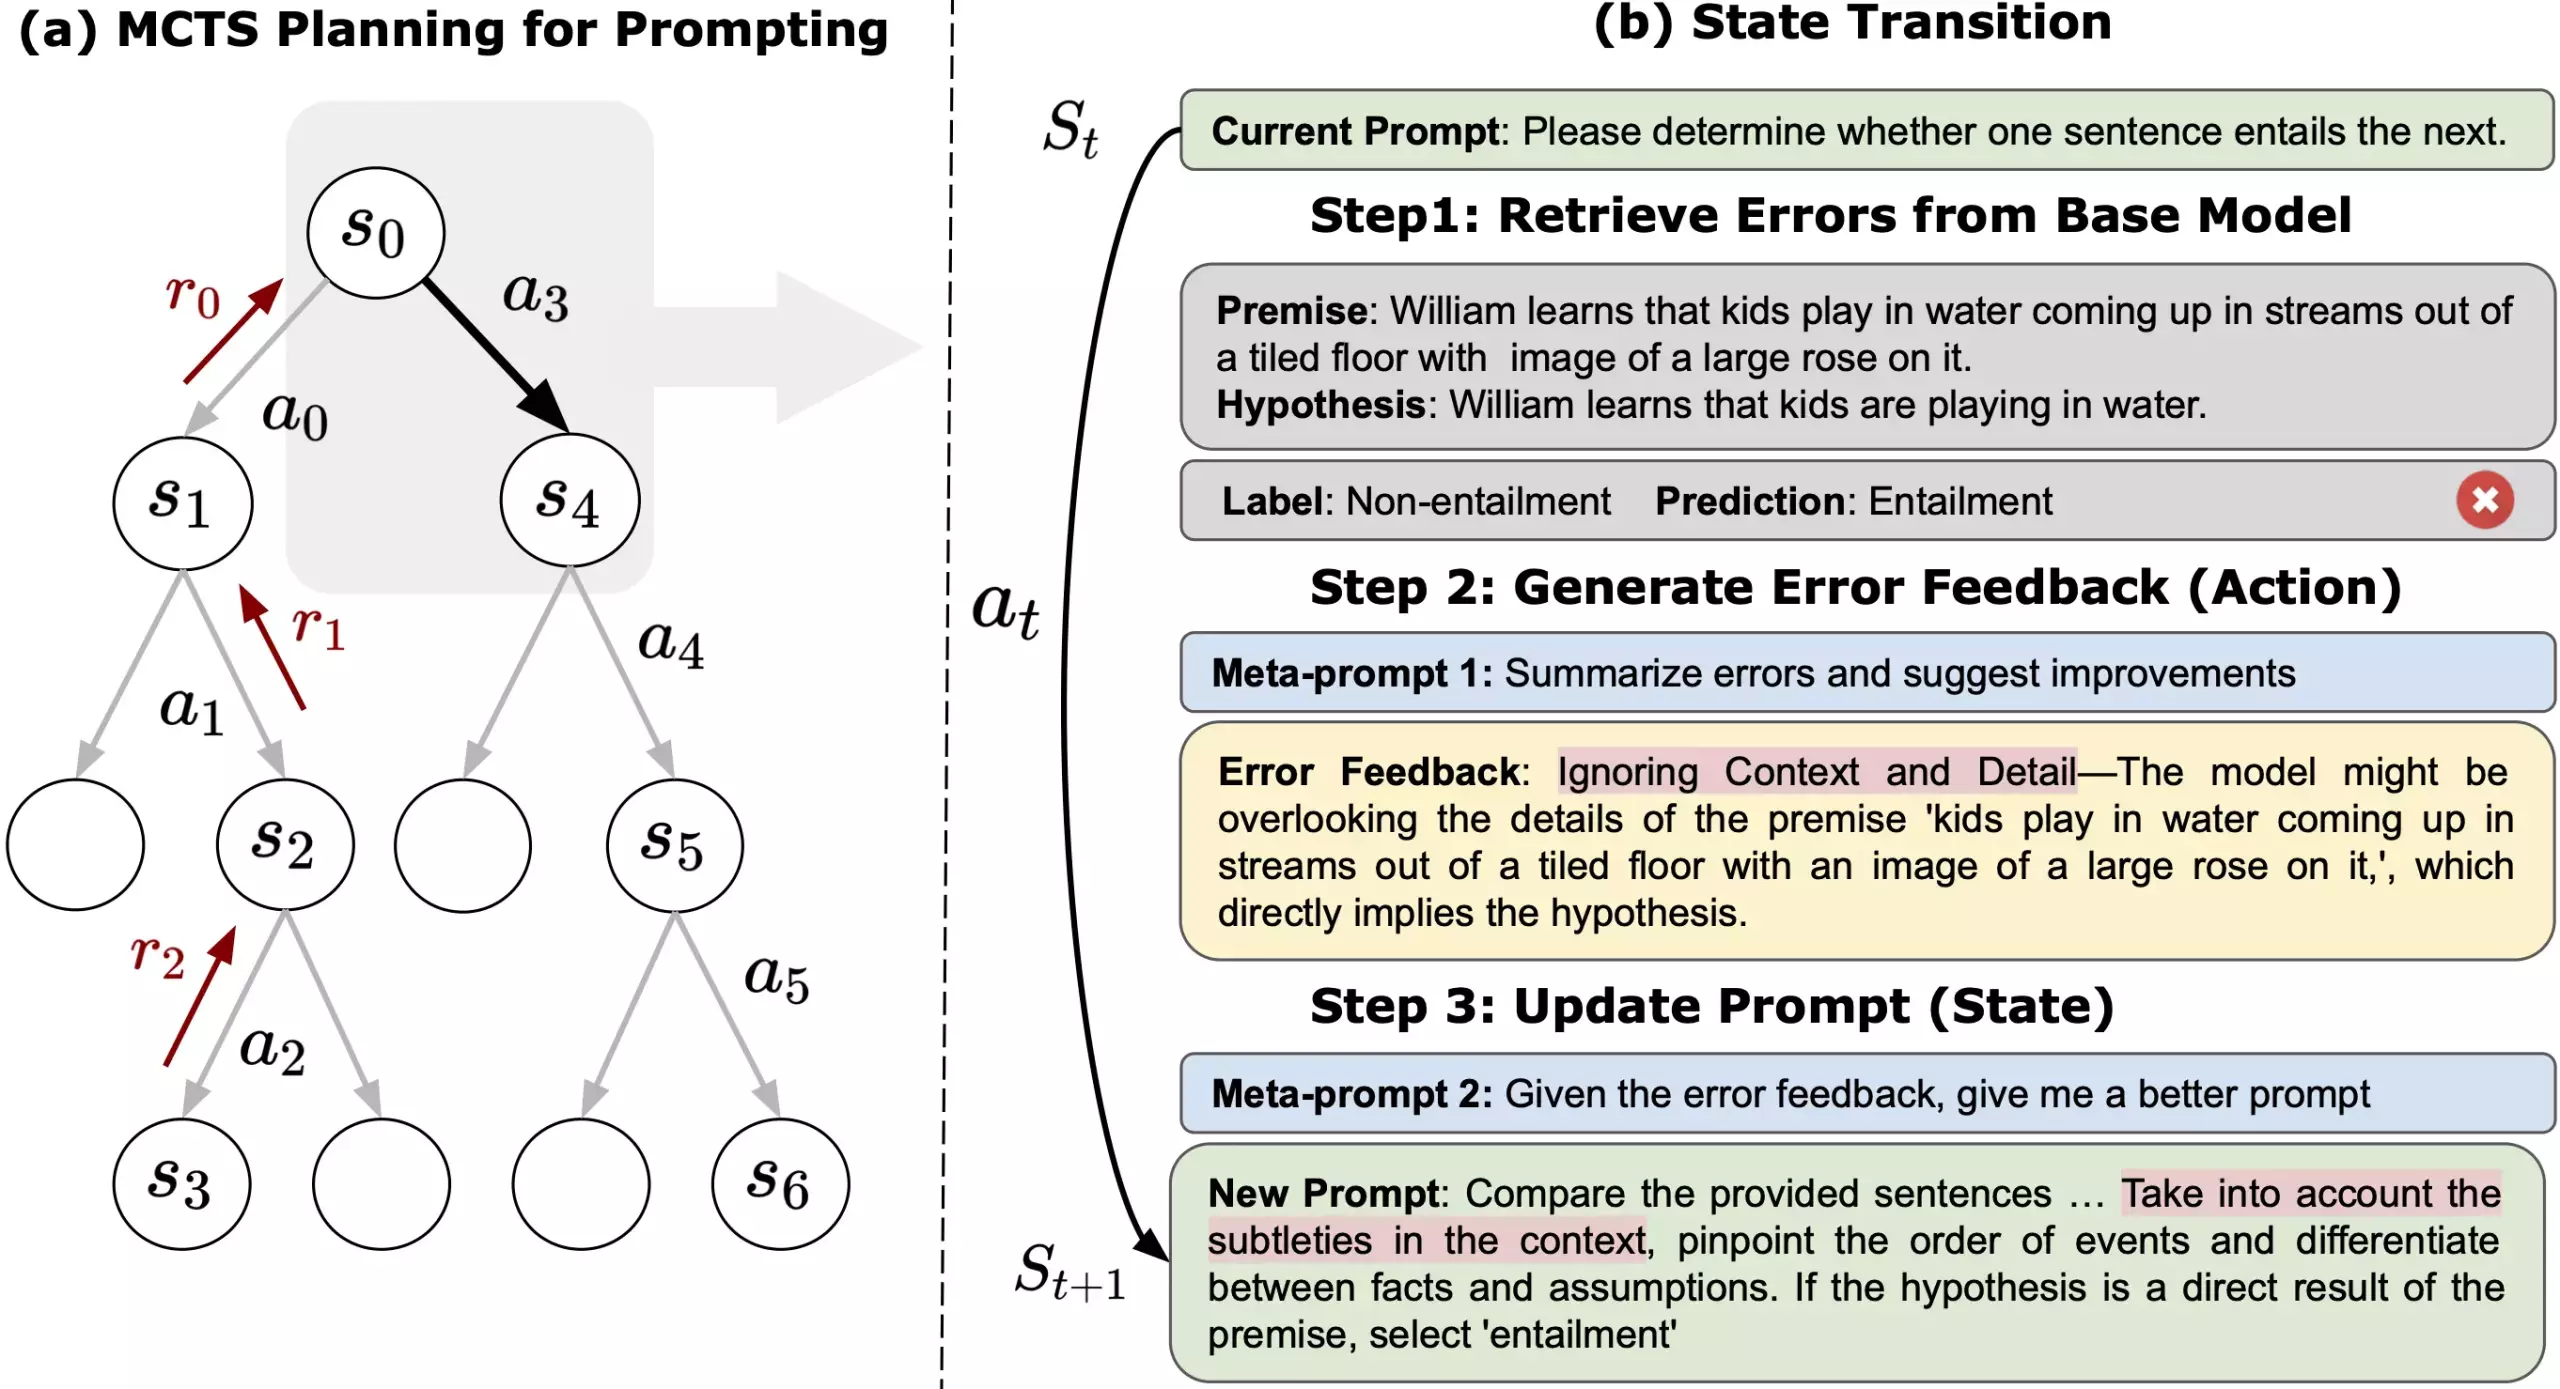 图 1 展示了专家级提示与普通人类编写的提示、基于采样方法的自动提示工程师设计的提示之间的对比。